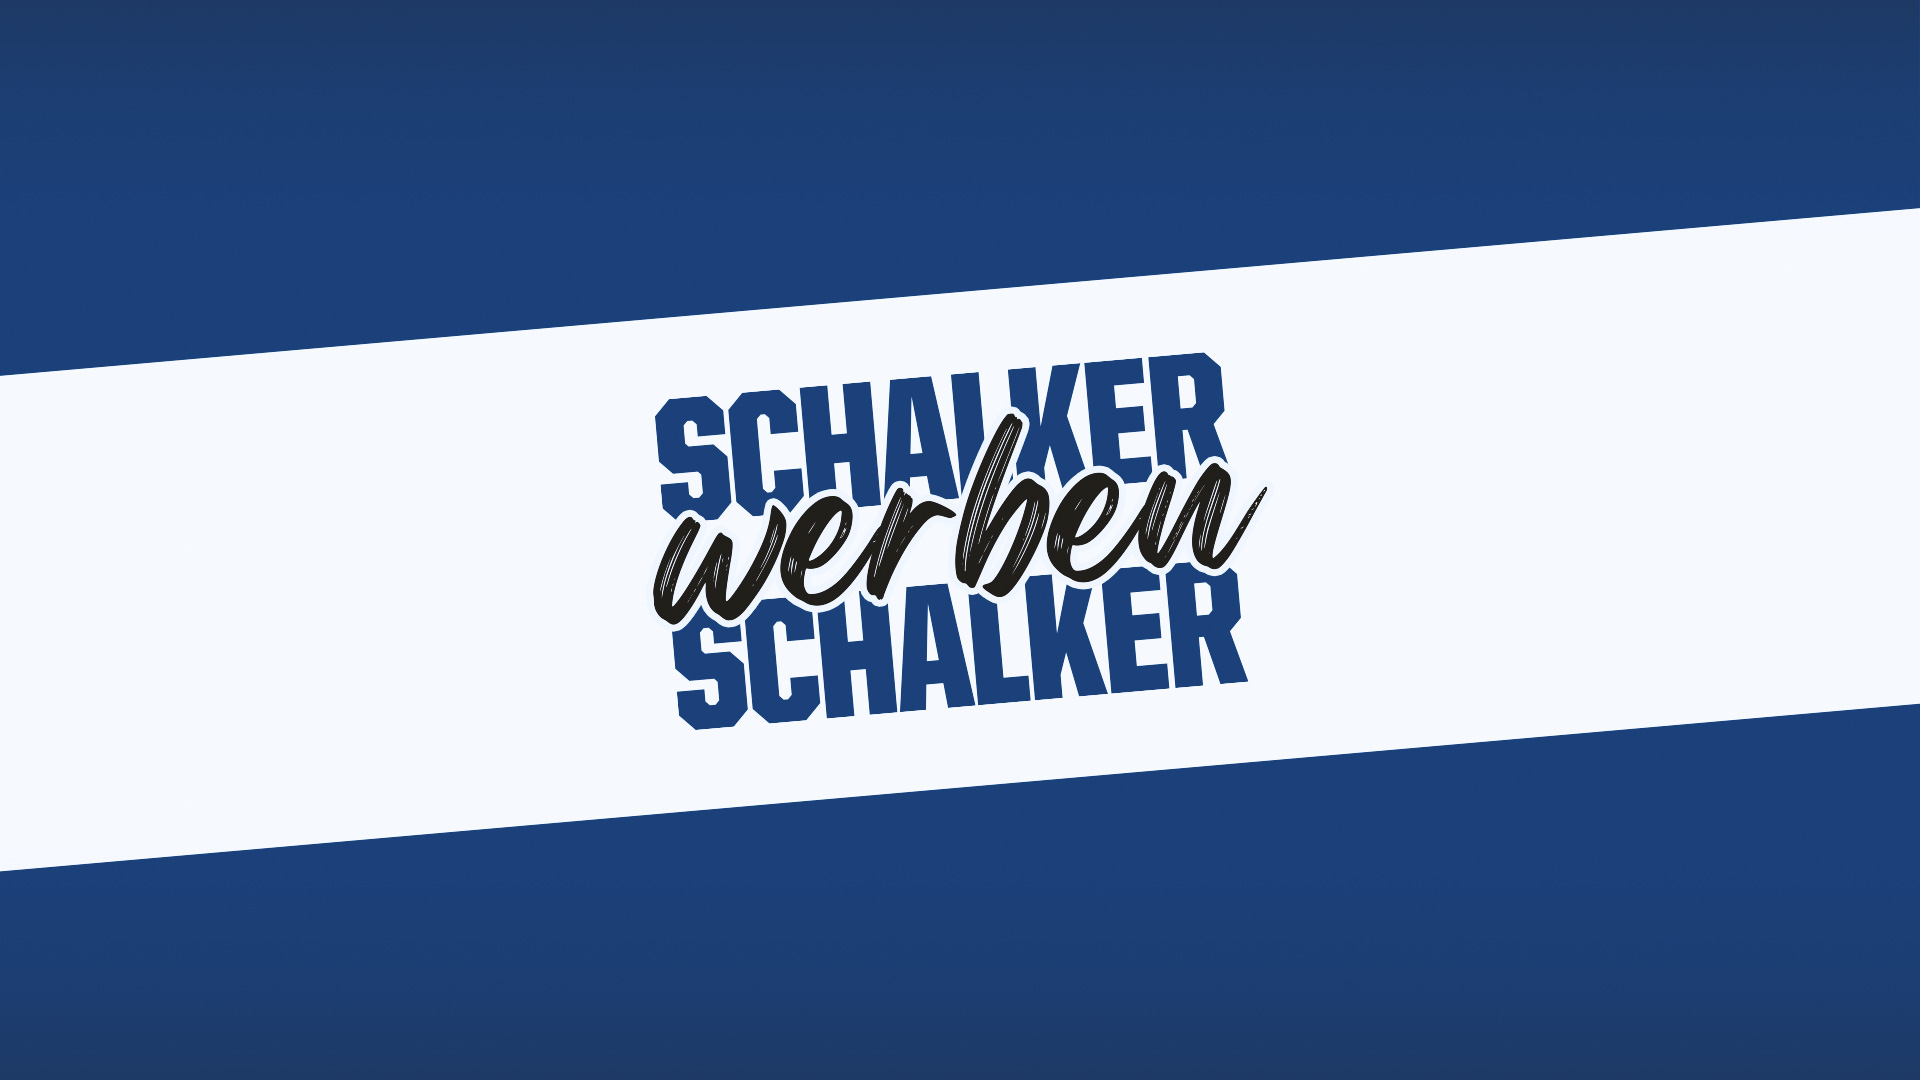 Schalker werben Schalker